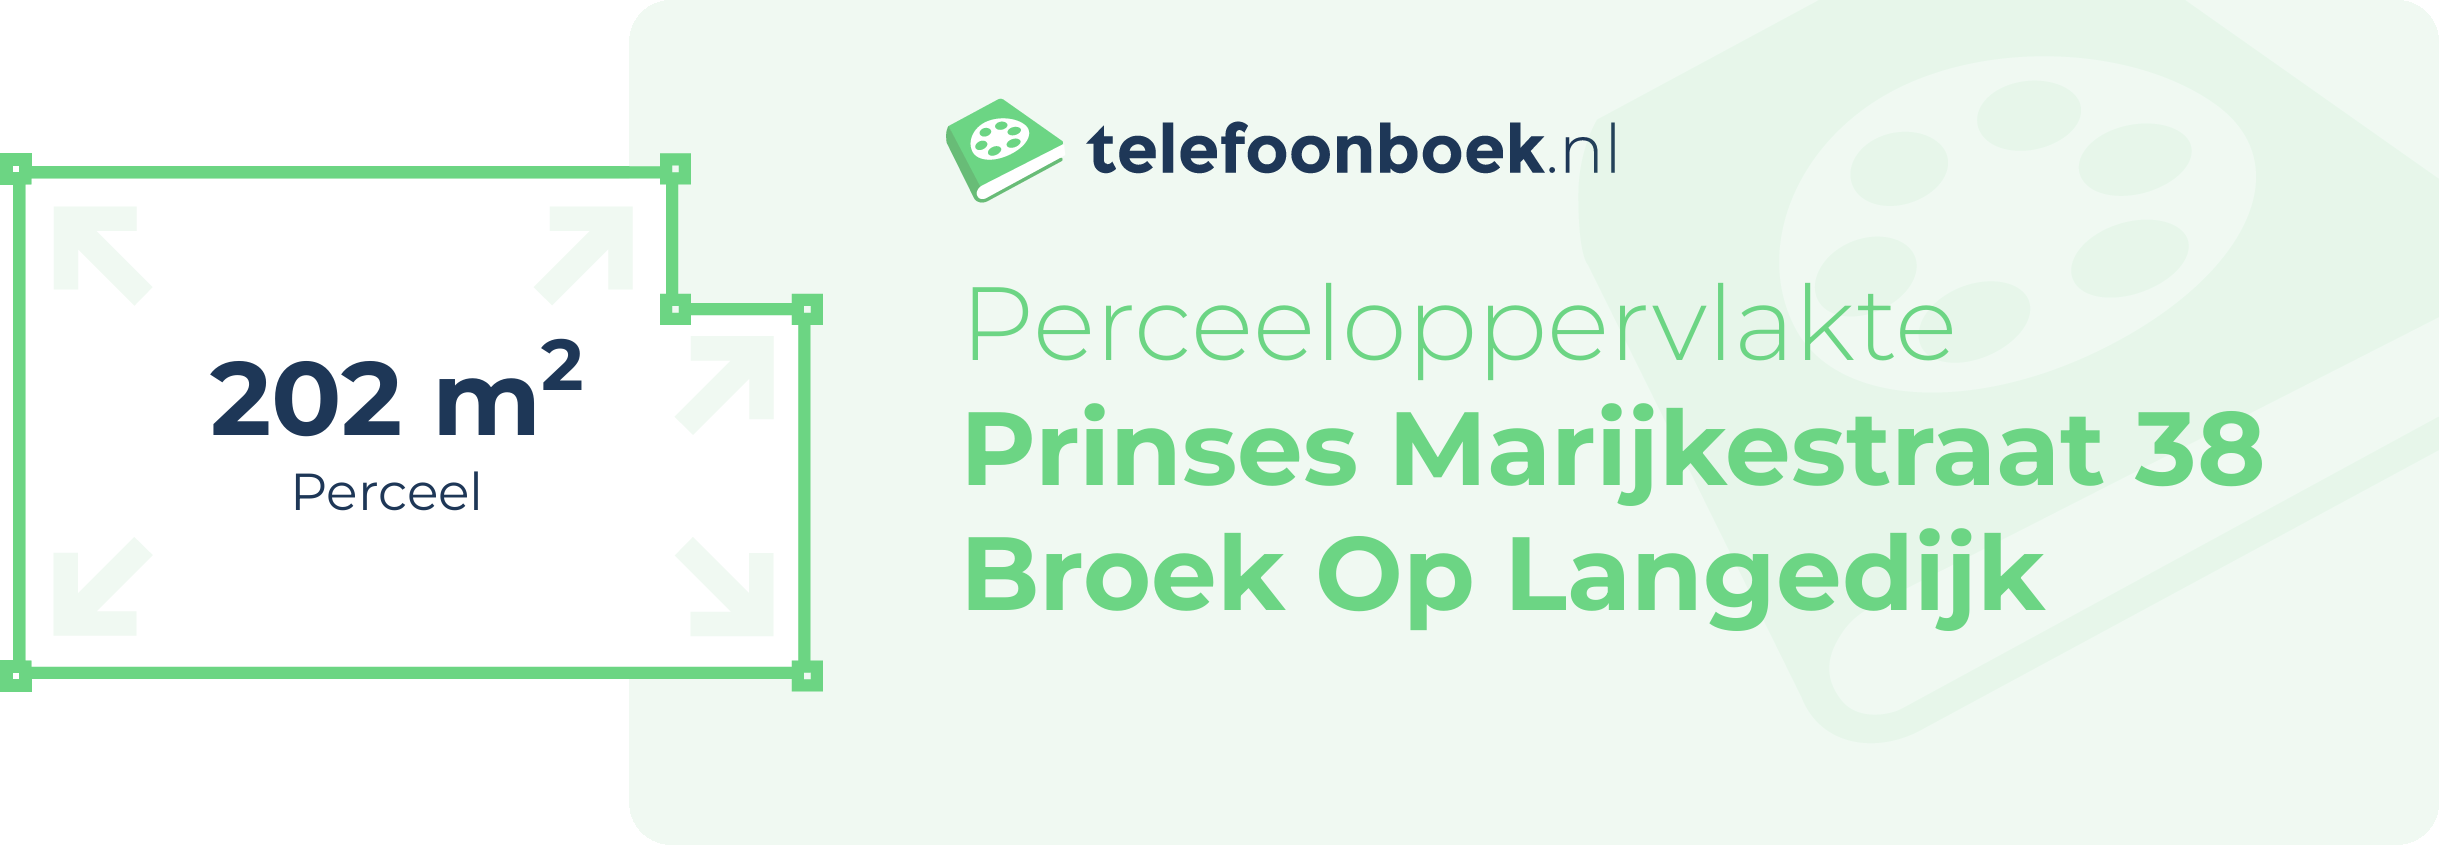 Perceeloppervlakte Prinses Marijkestraat 38 Broek Op Langedijk